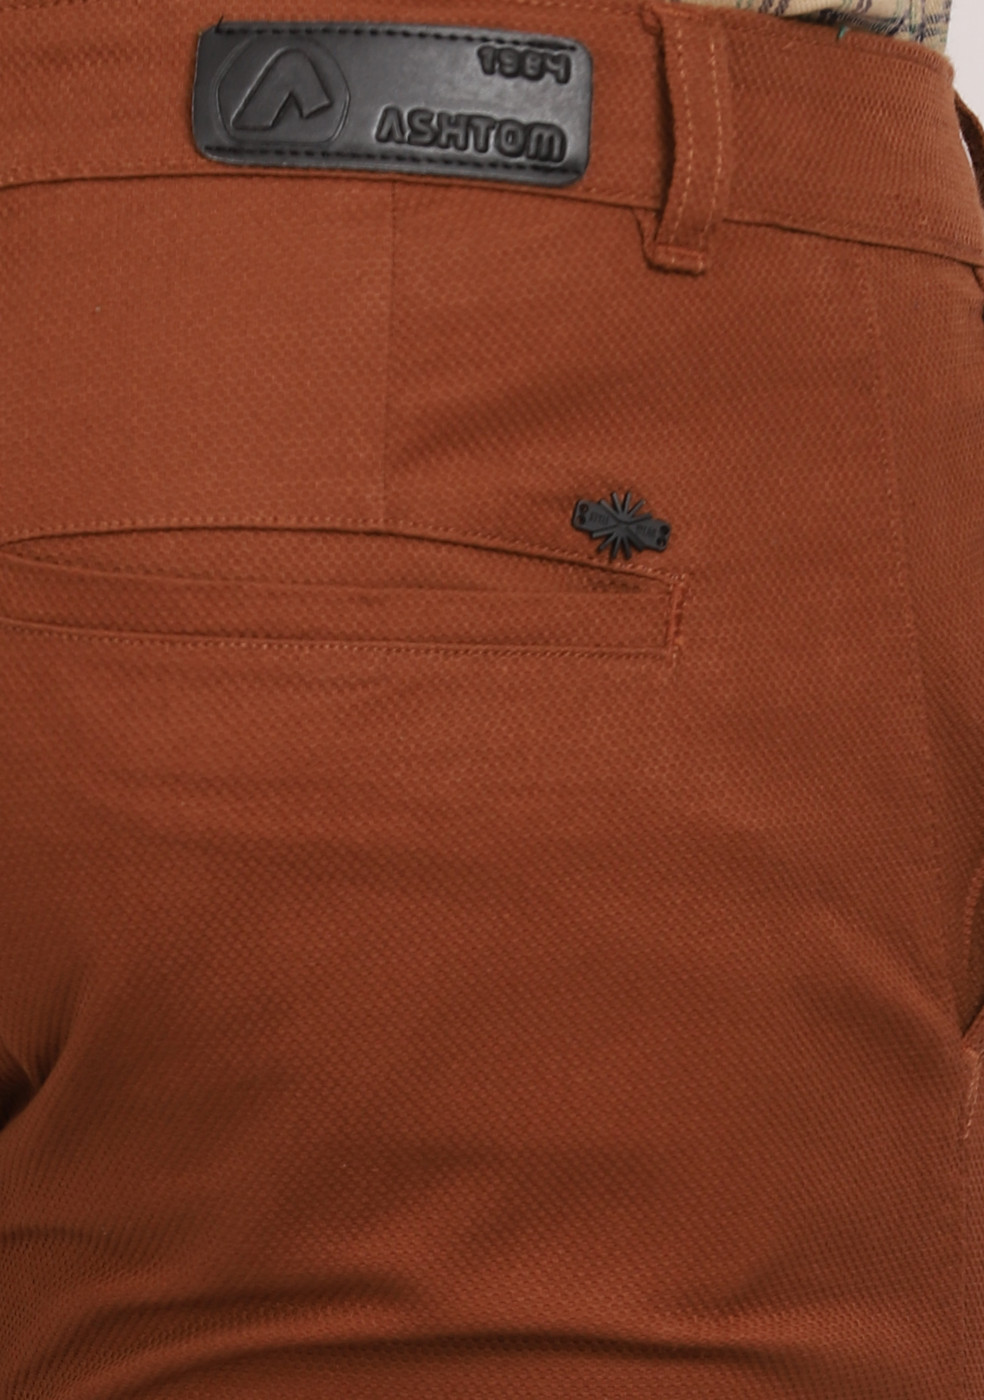 ASHTOM Copper Formal Cotton Trouser Regular Fit For Men